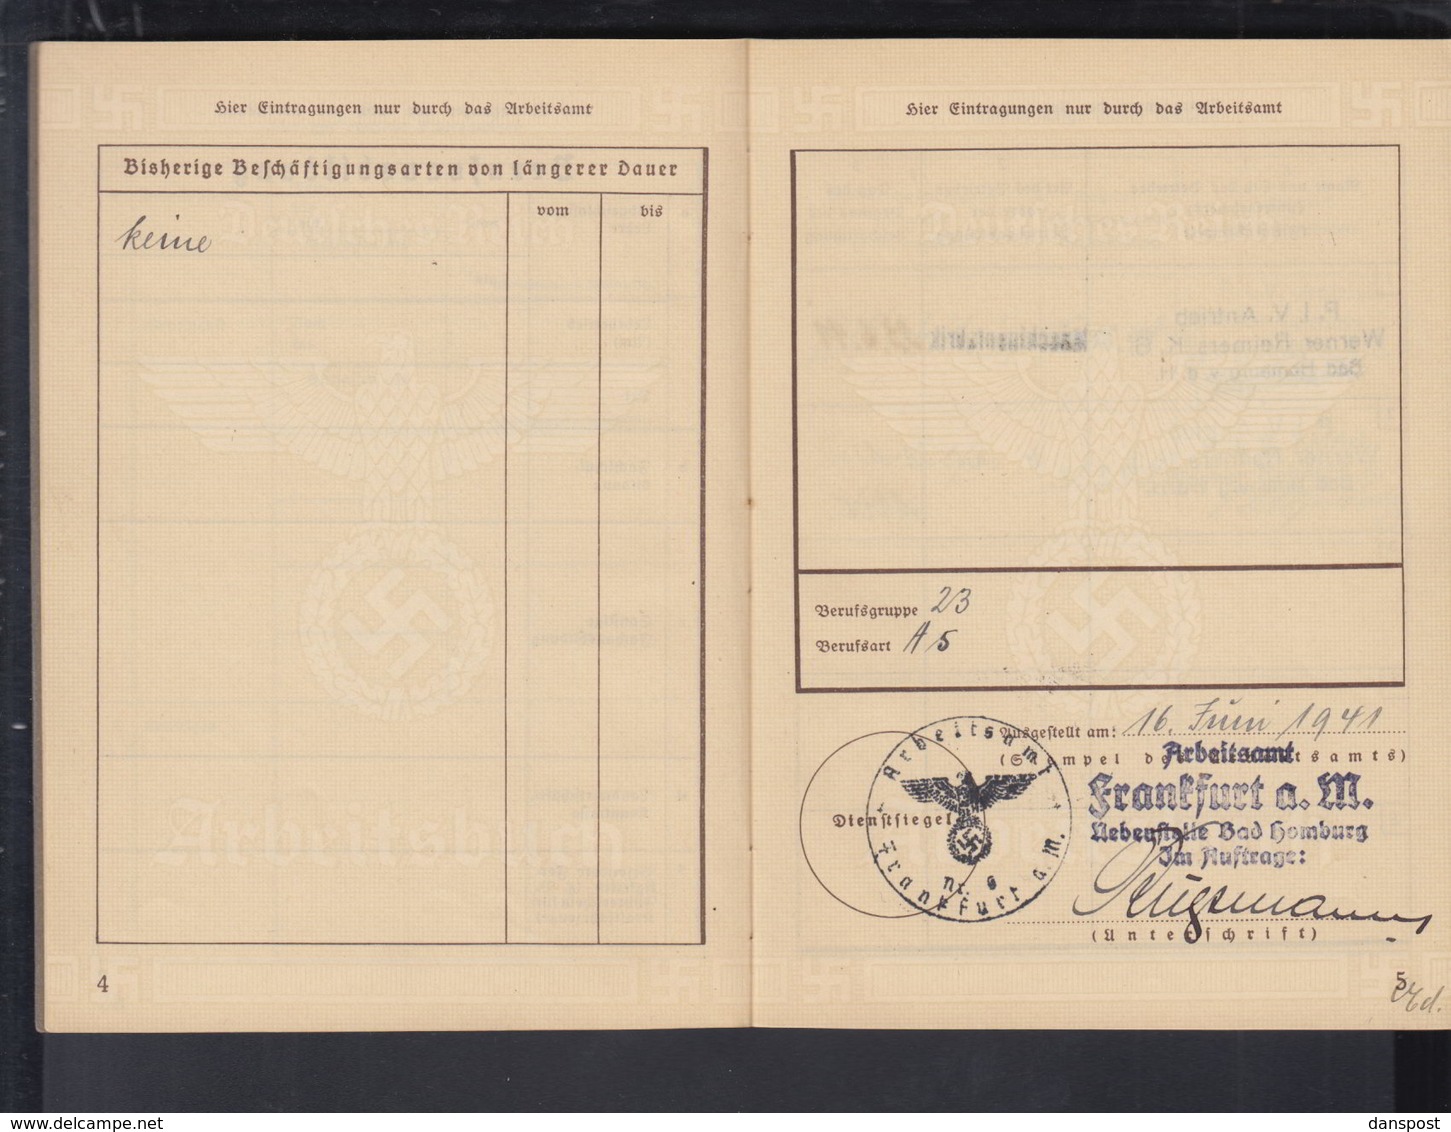 DR Arbeitsbuch Bürohilfskraft PIV Antrieb Werner Reimers KG Bad-Homburg VdH 16.6.1941 Frankfurt - Historische Dokumente